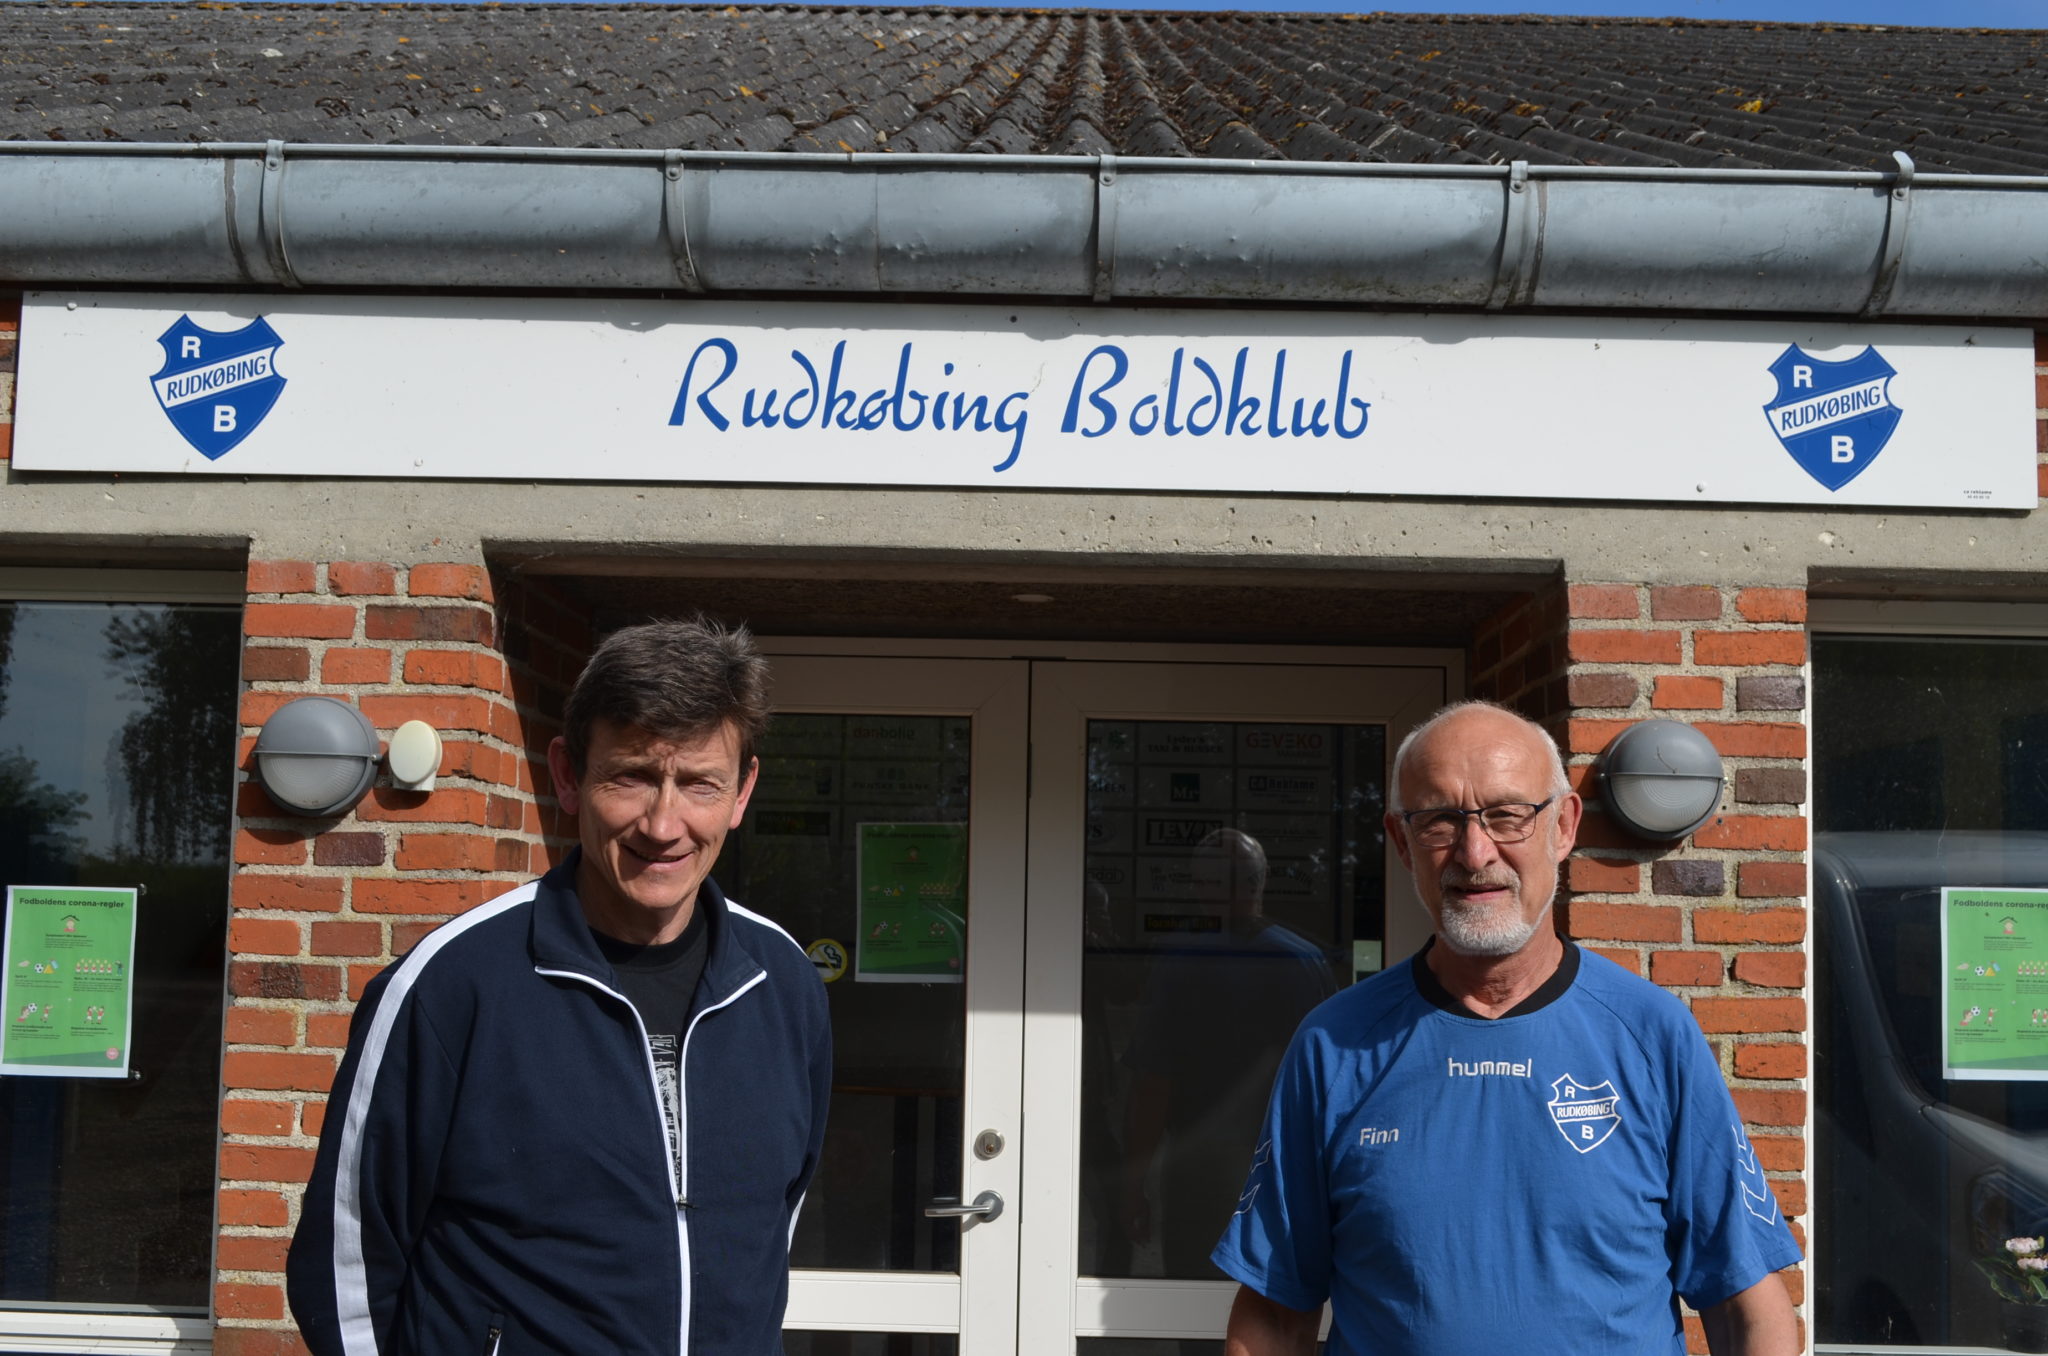 Tidligere cheftræner Kurt Hansen (tv) og formand Finn Pedersen håber, at langelænderne i fremtiden vil samarbejde og bakke op om fodbolden i Rudkøbing Boldklub. (Foto: Privat)